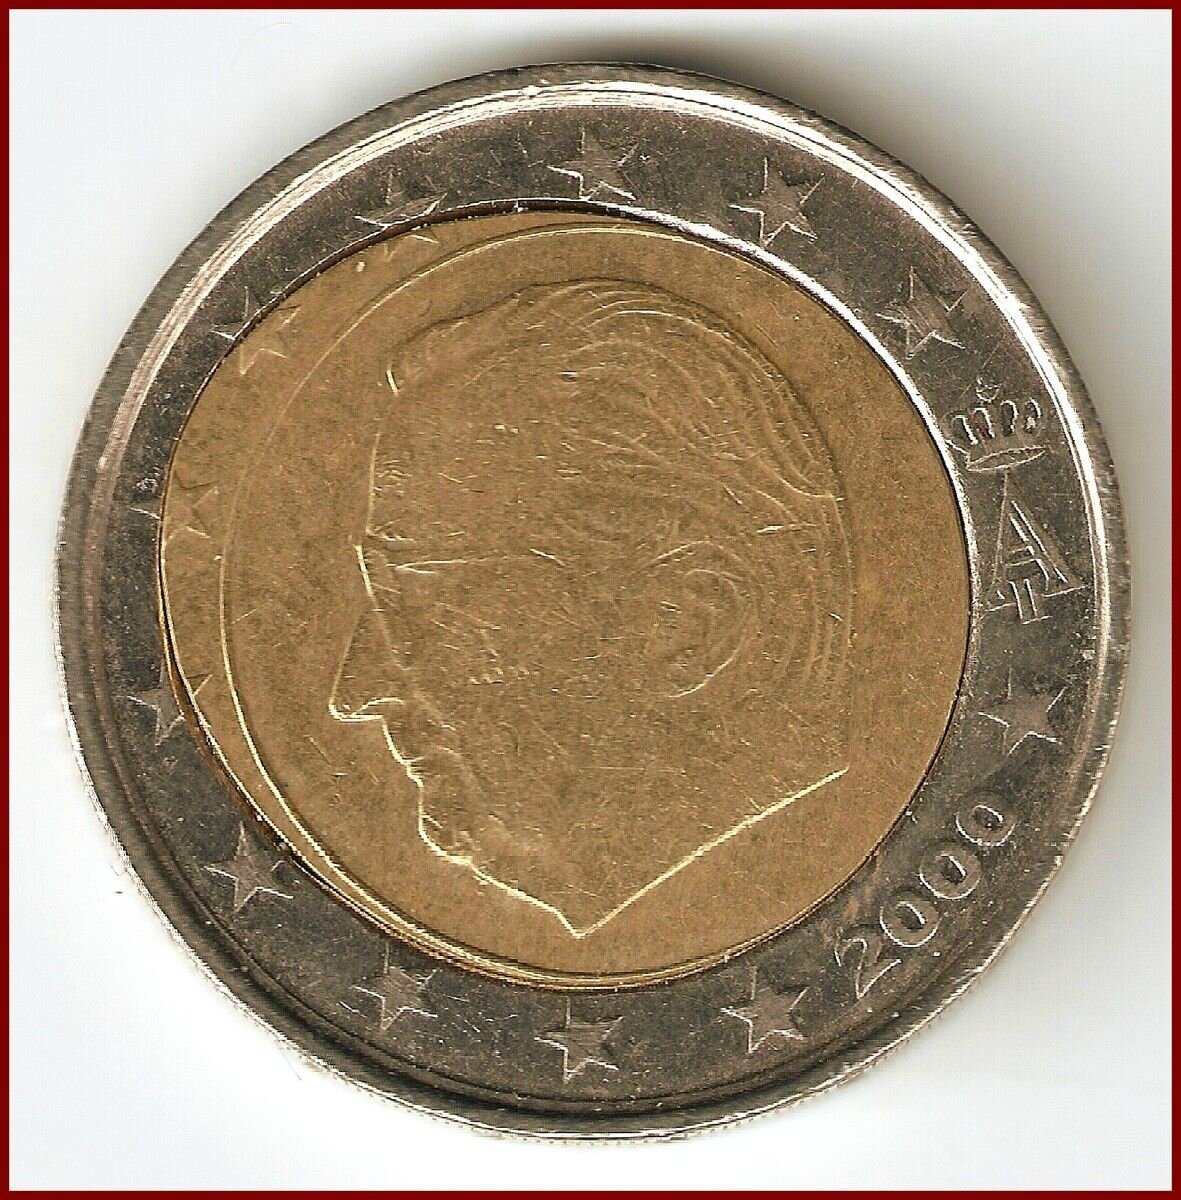 2€ Belgique fautée coeur déformé - Eurorare monnaies fautées ou